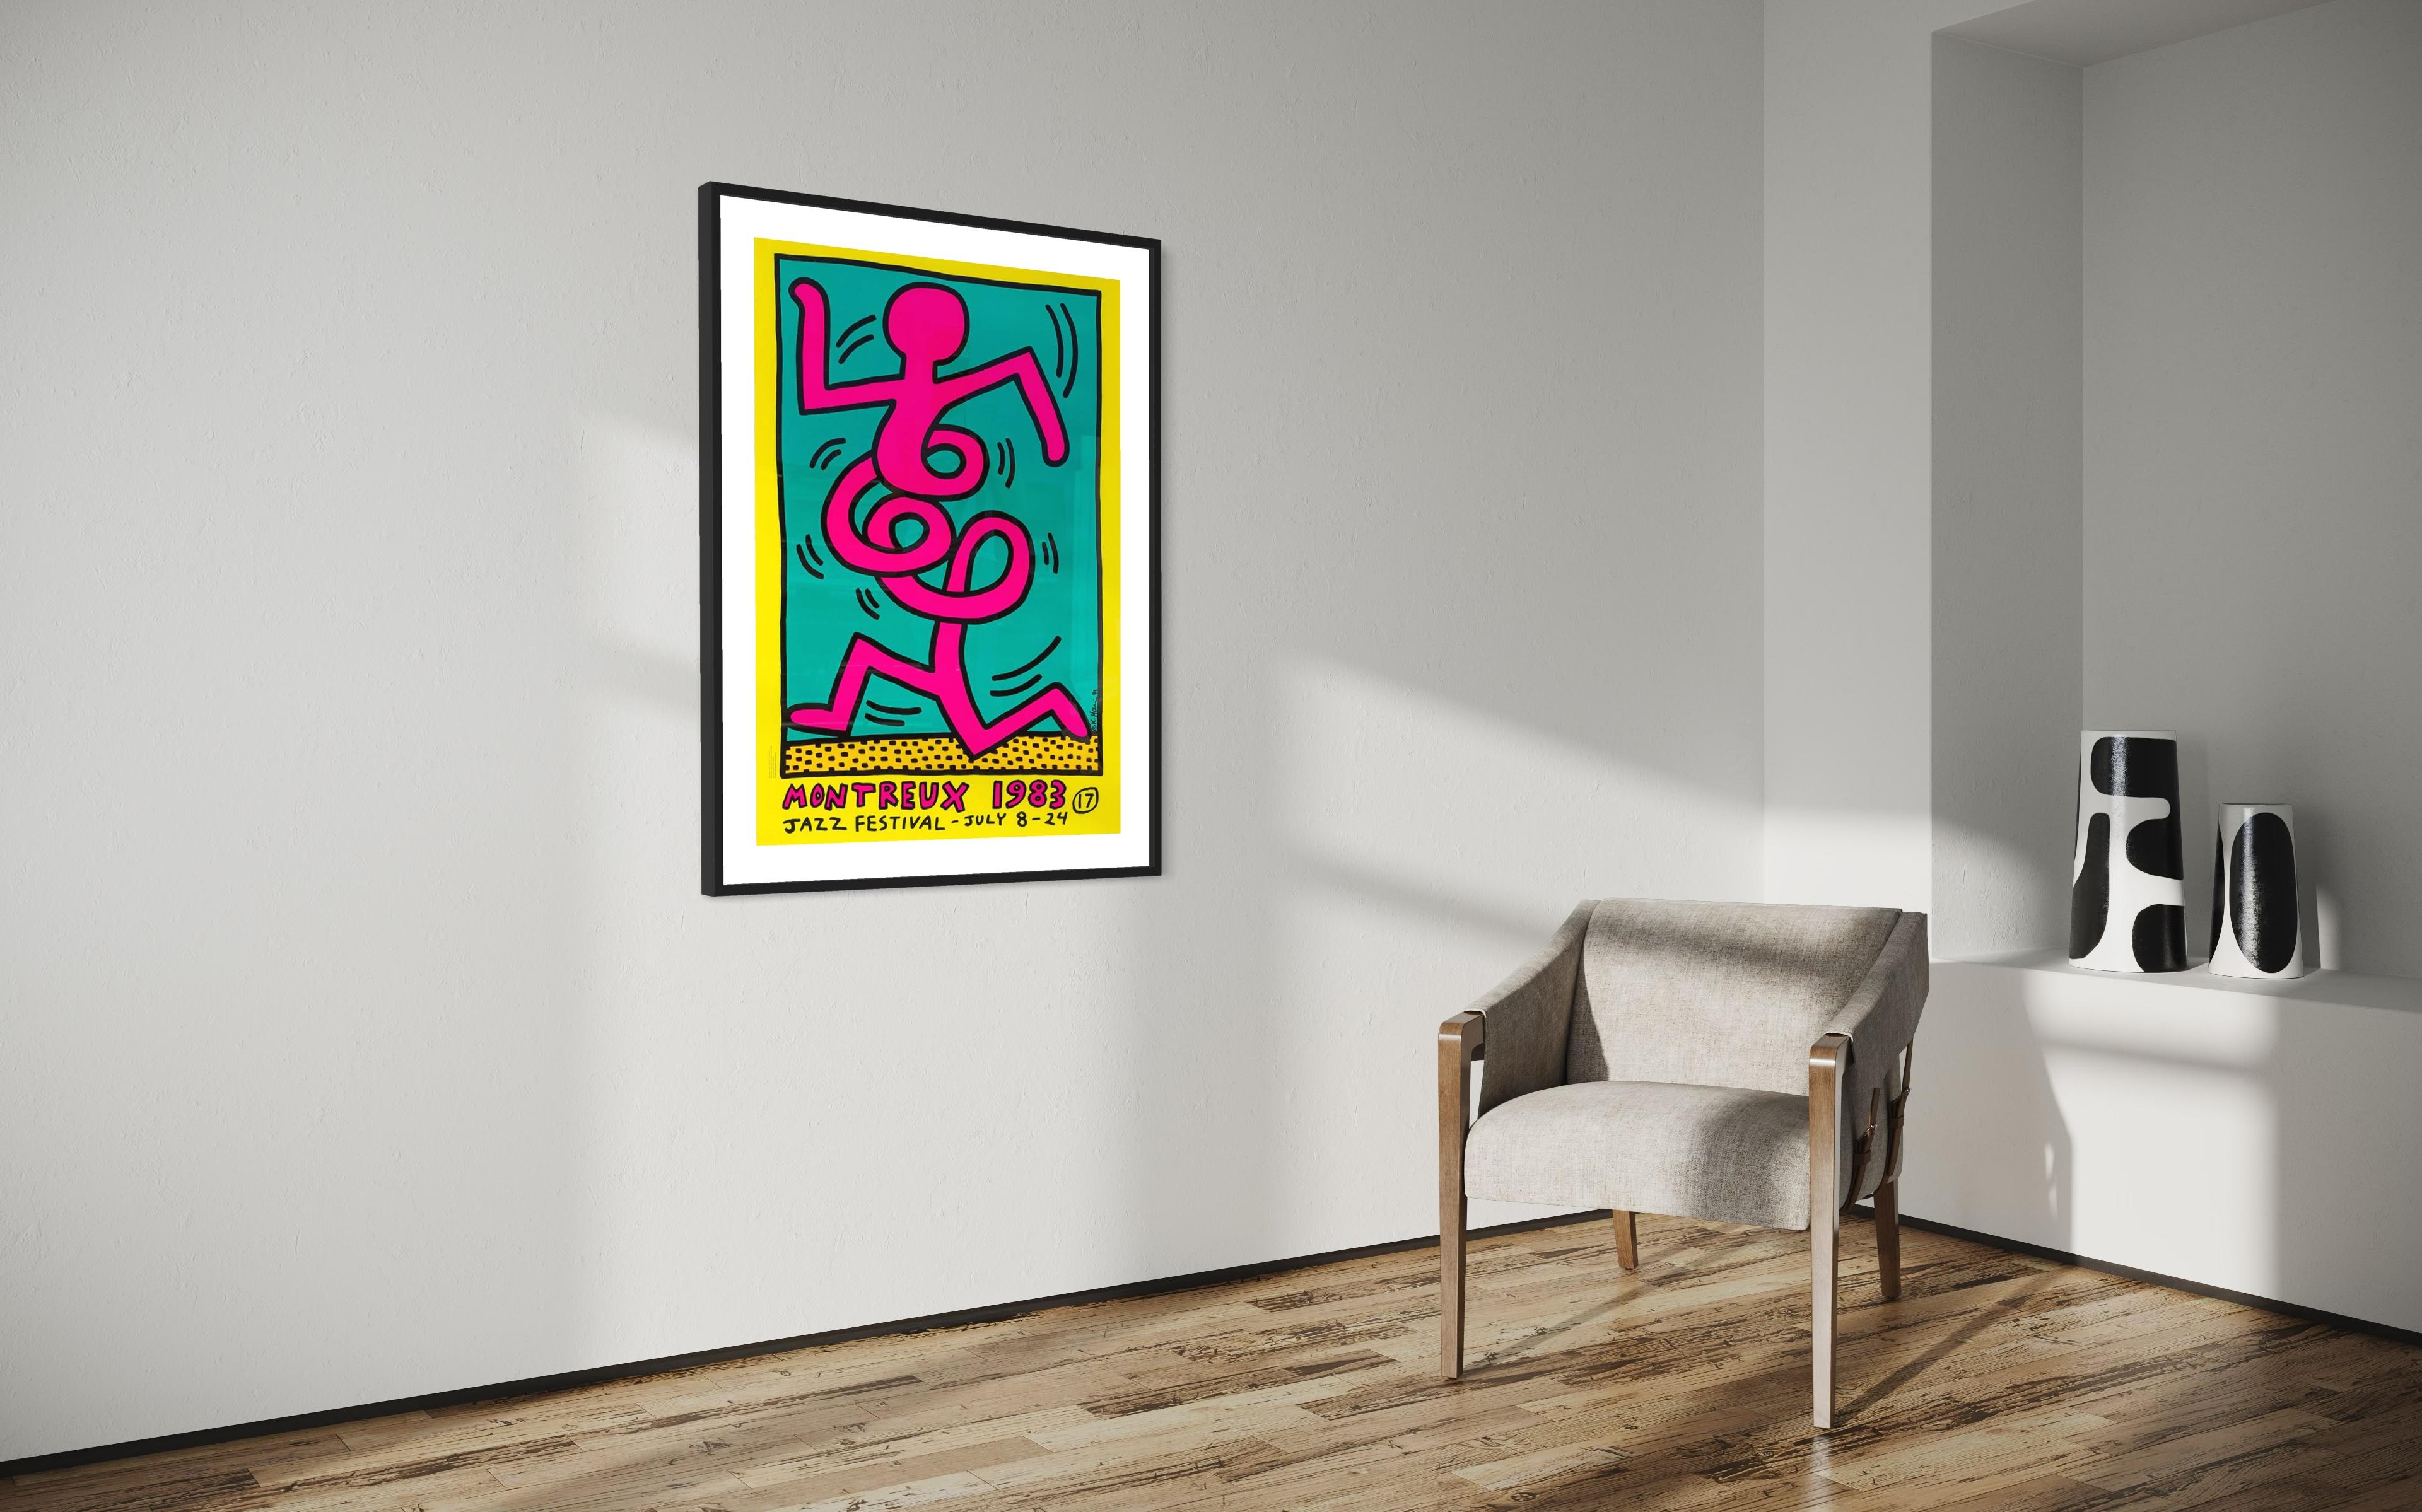 Titre : Montreux Jazz Festival 1983 par Keith Haring 1986

Support : Sérigraphie en couleurs sur papier couché demi-mat de 250 gr.

Imprimeur : Albin Uldry

Taille : 70 x 100 cm (27.6 x 39.4 in)

Signature : Plaque signée par Keith Haring 

Edition